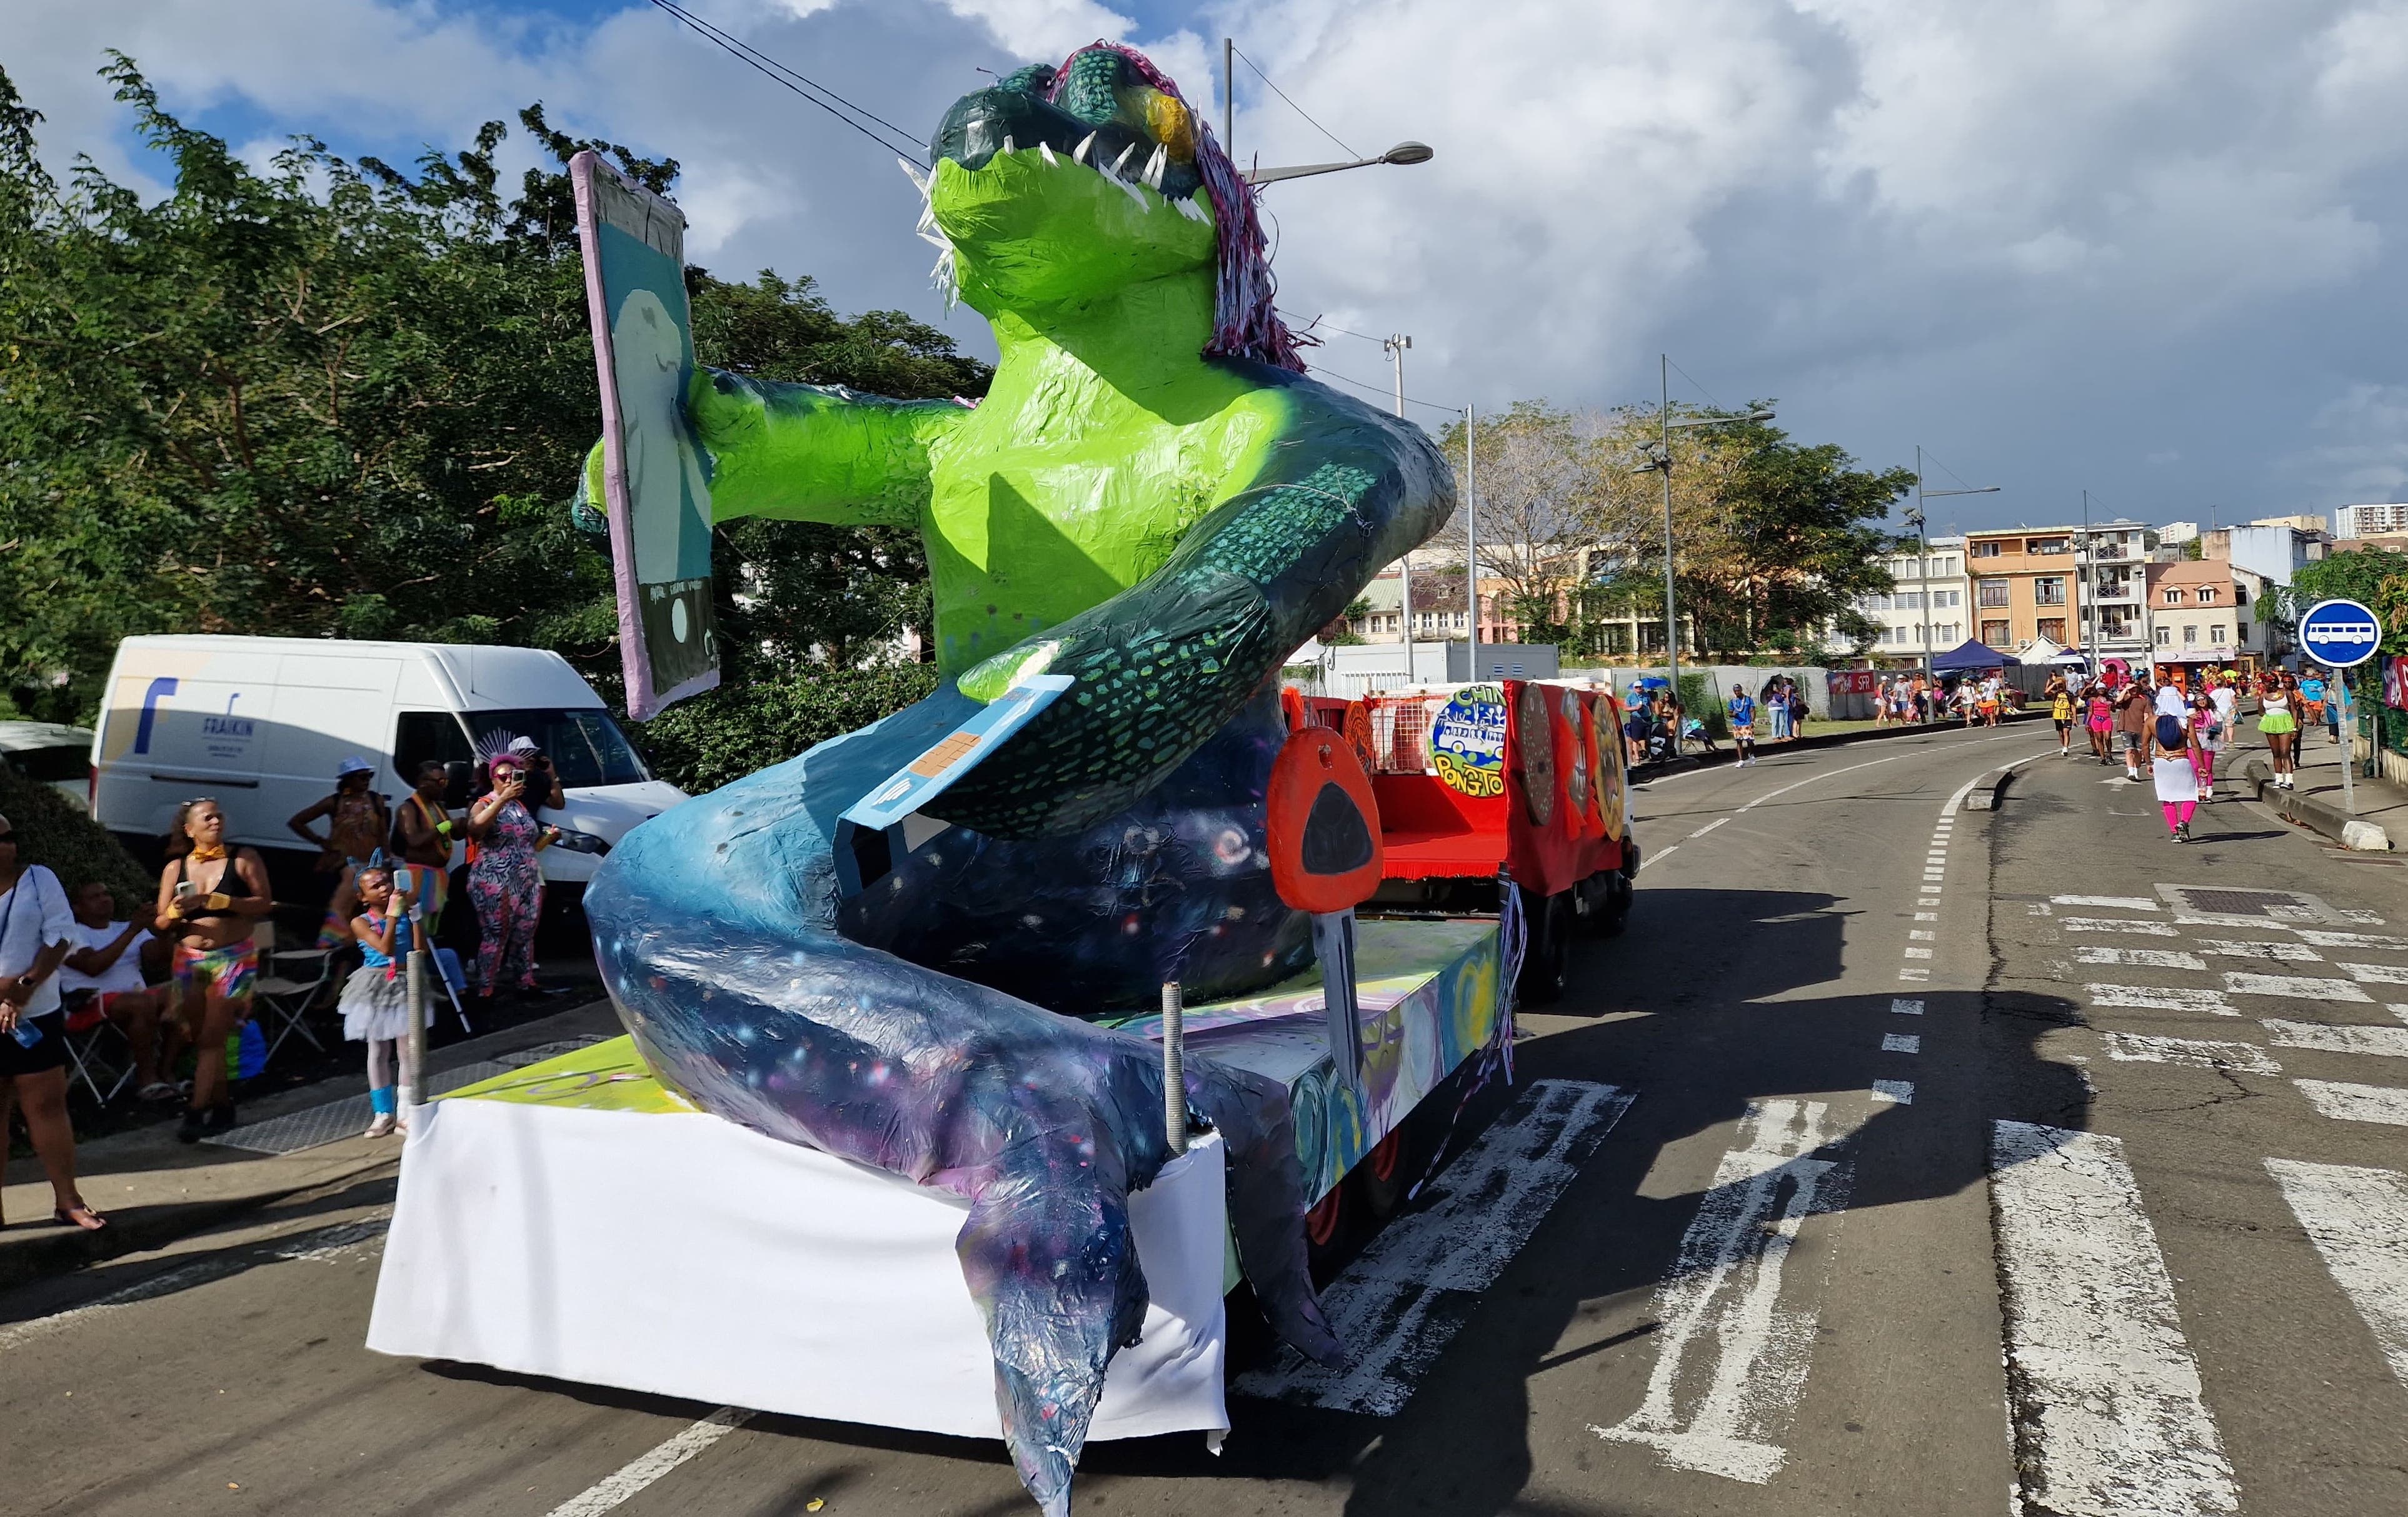     Mi-crocodile, mi-baleine, un Vaval connecté règne sur le carnaval de Fort-de-France

